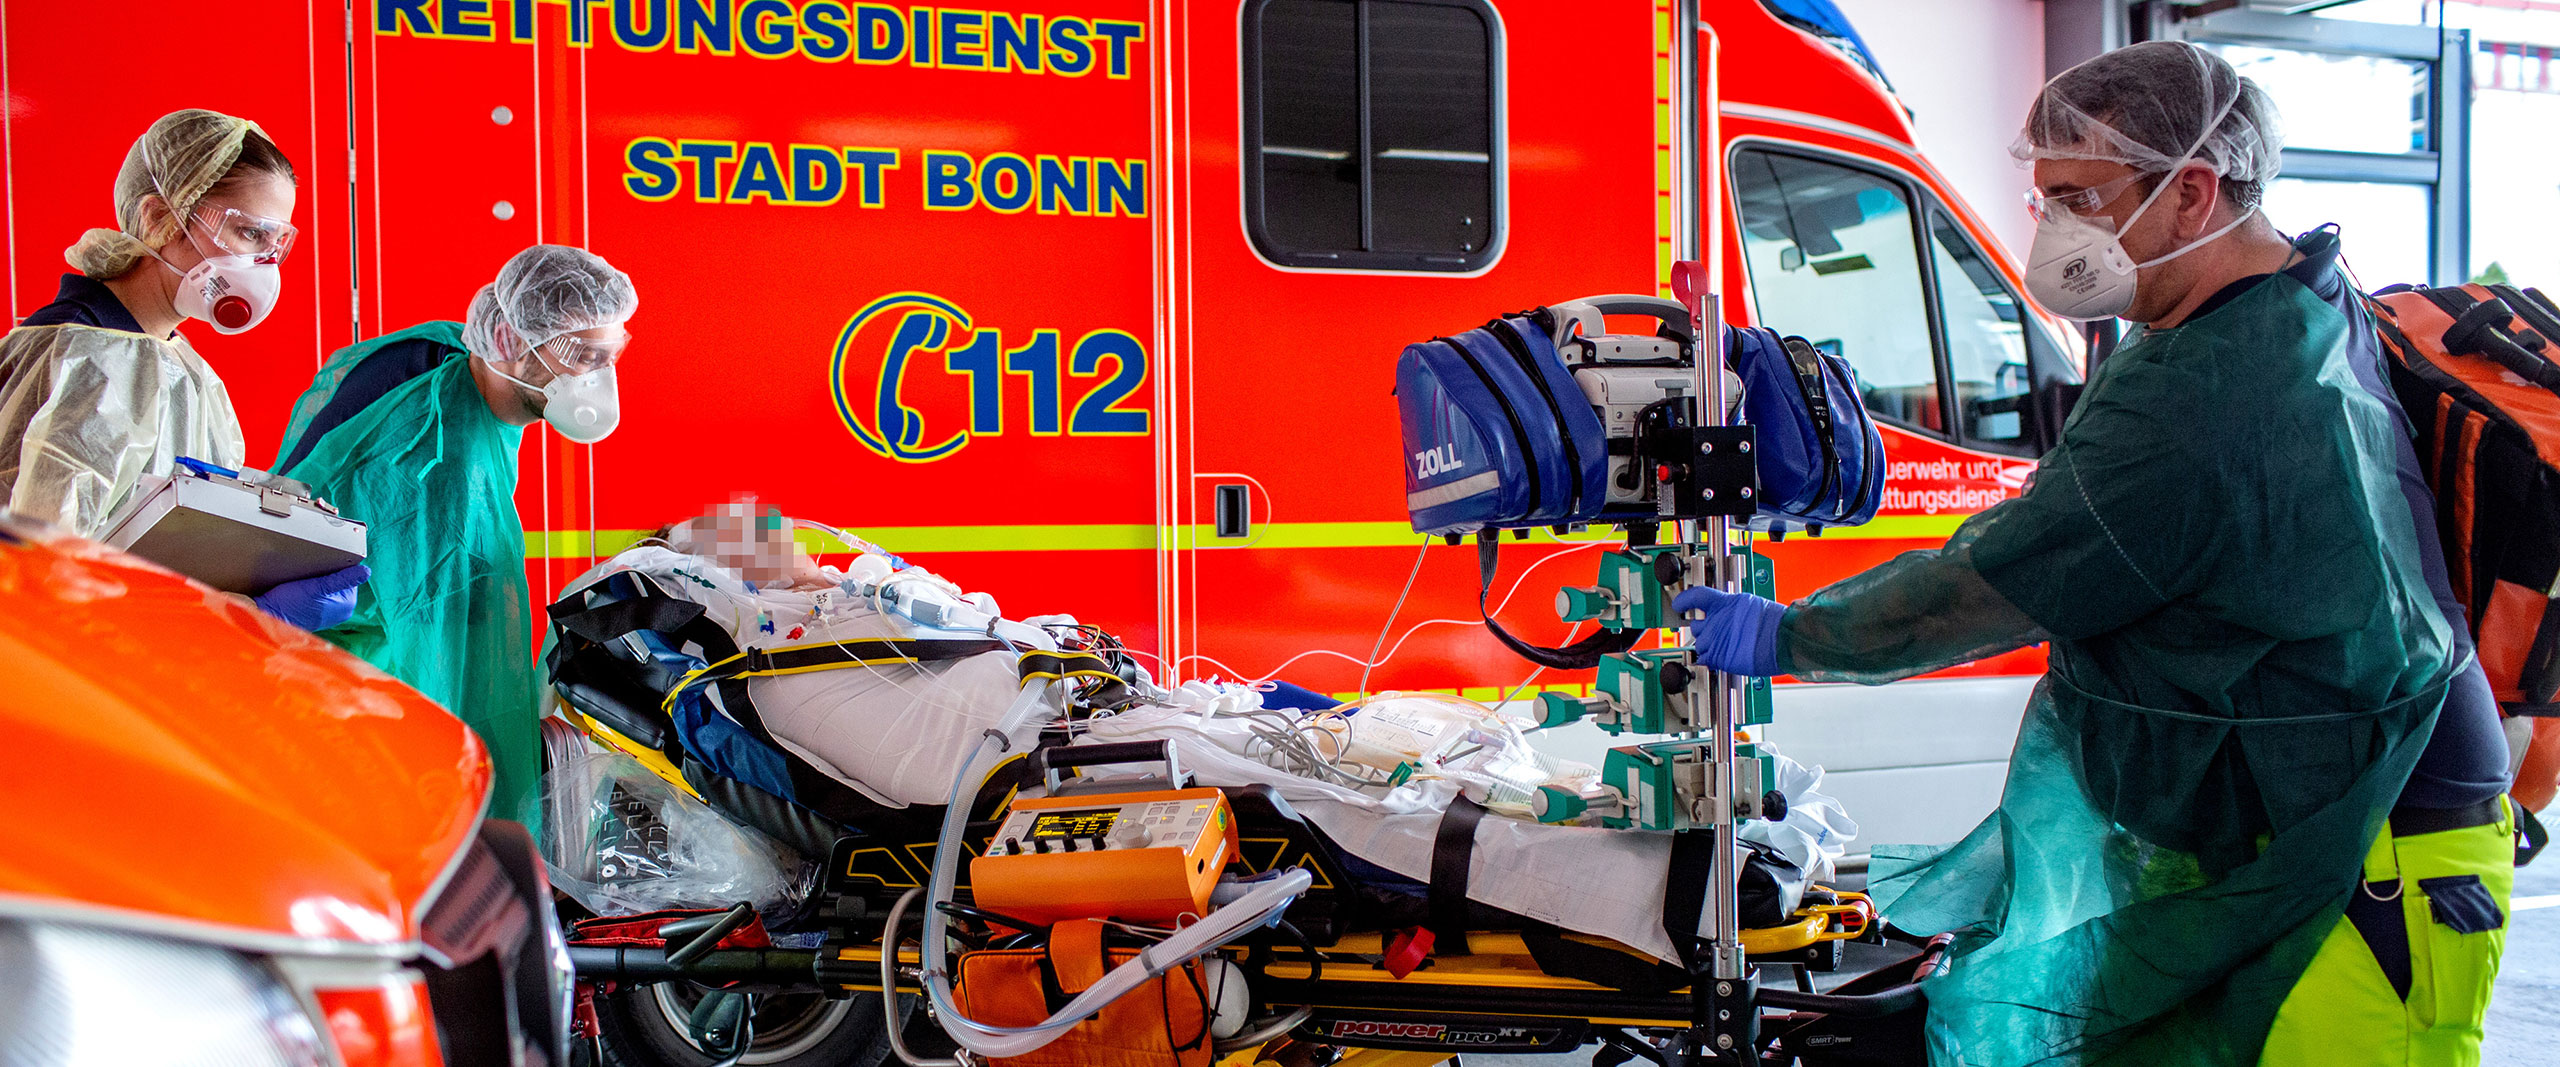 Verlegung von zwei Covid-19-Patienten aus Bergamo in das Universitätsklinikum Bonn